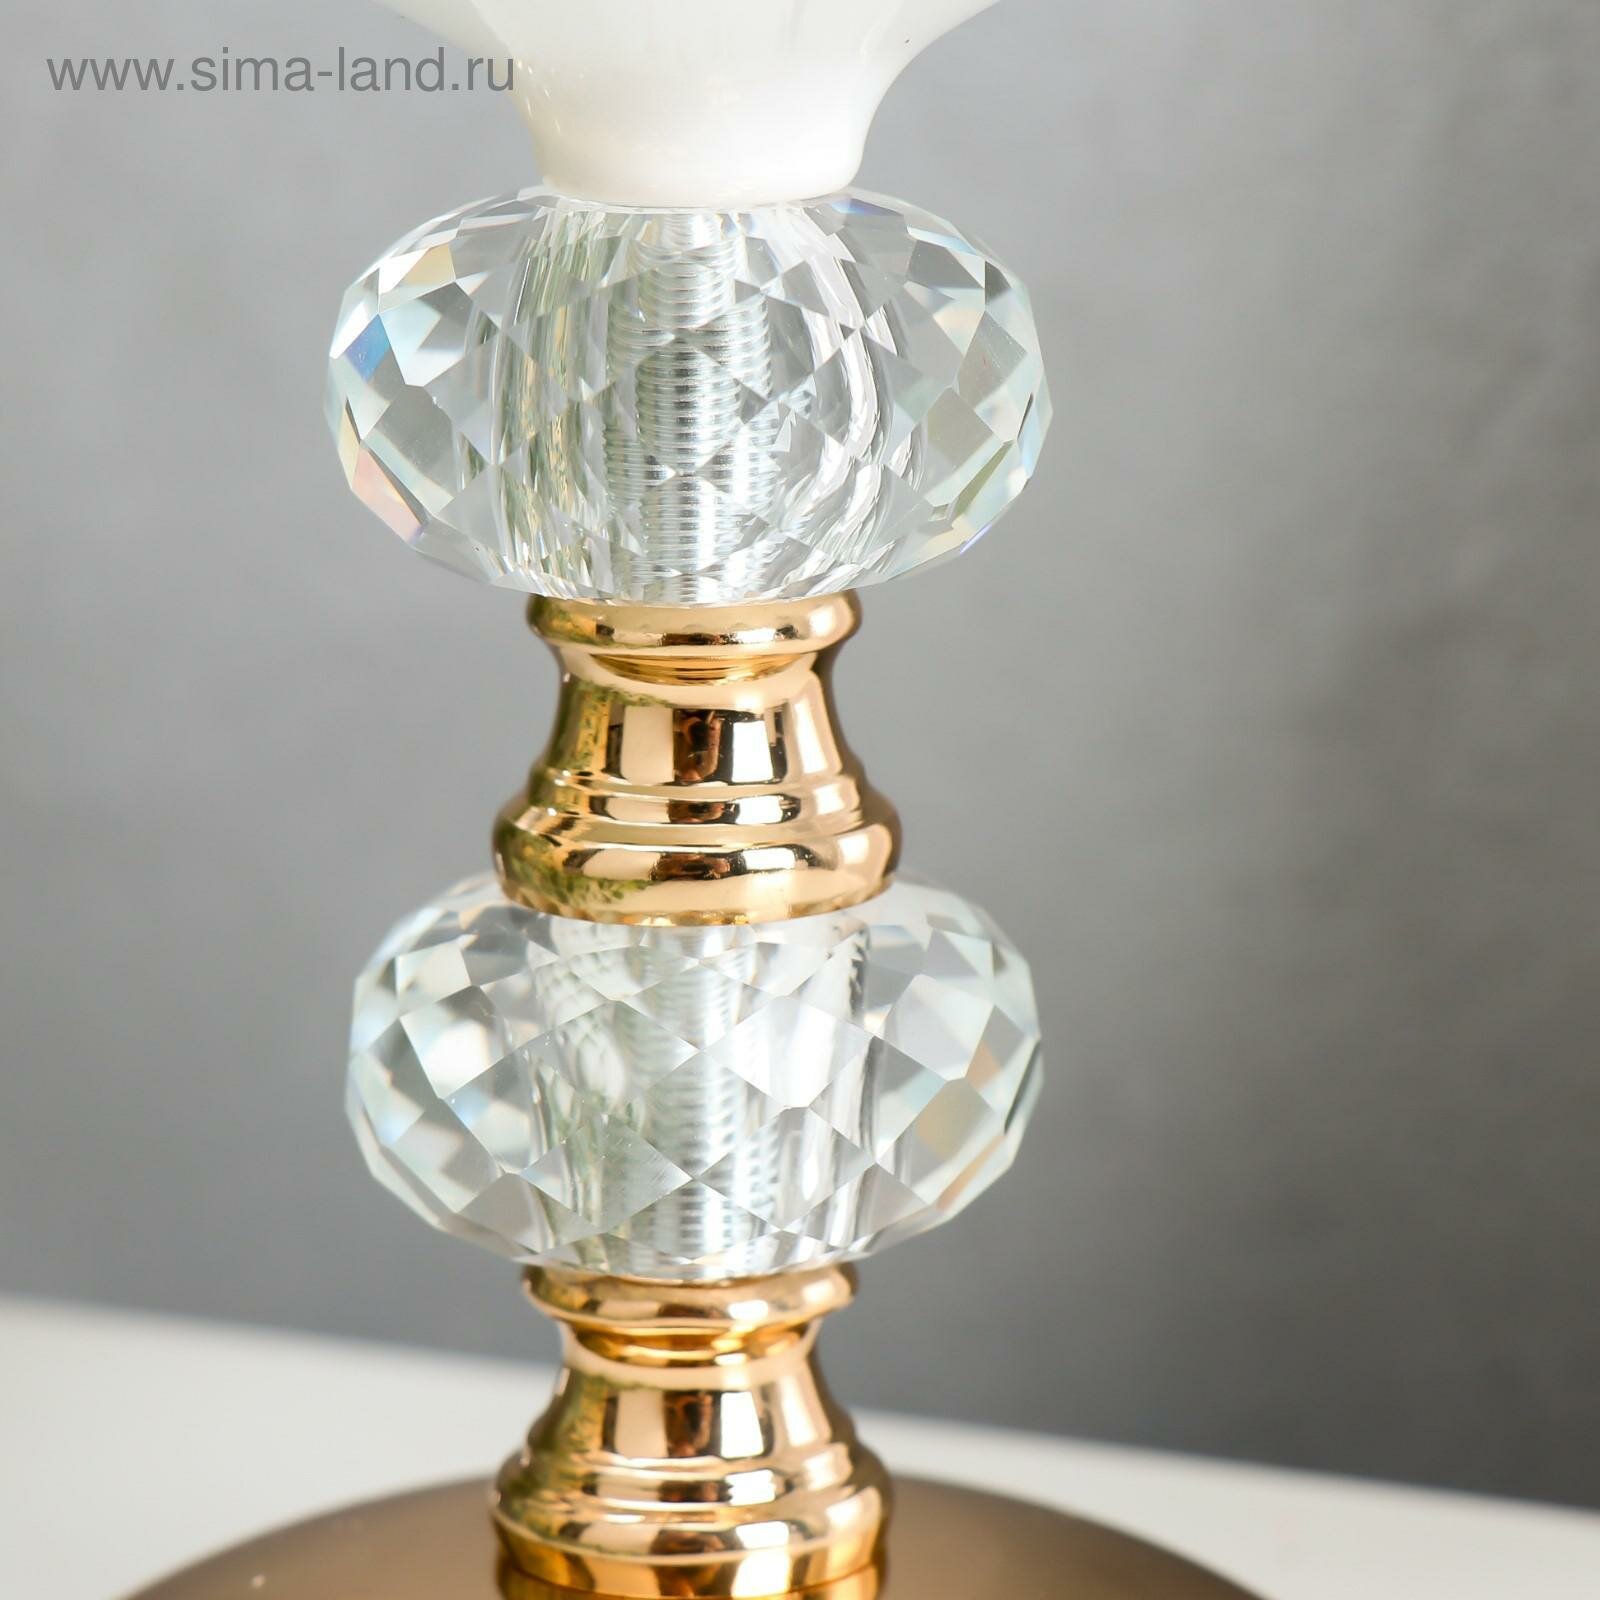 Подсвечник металл на 1 свечу "Хрусталики" белый с золотом 16х9,7х9,7 см